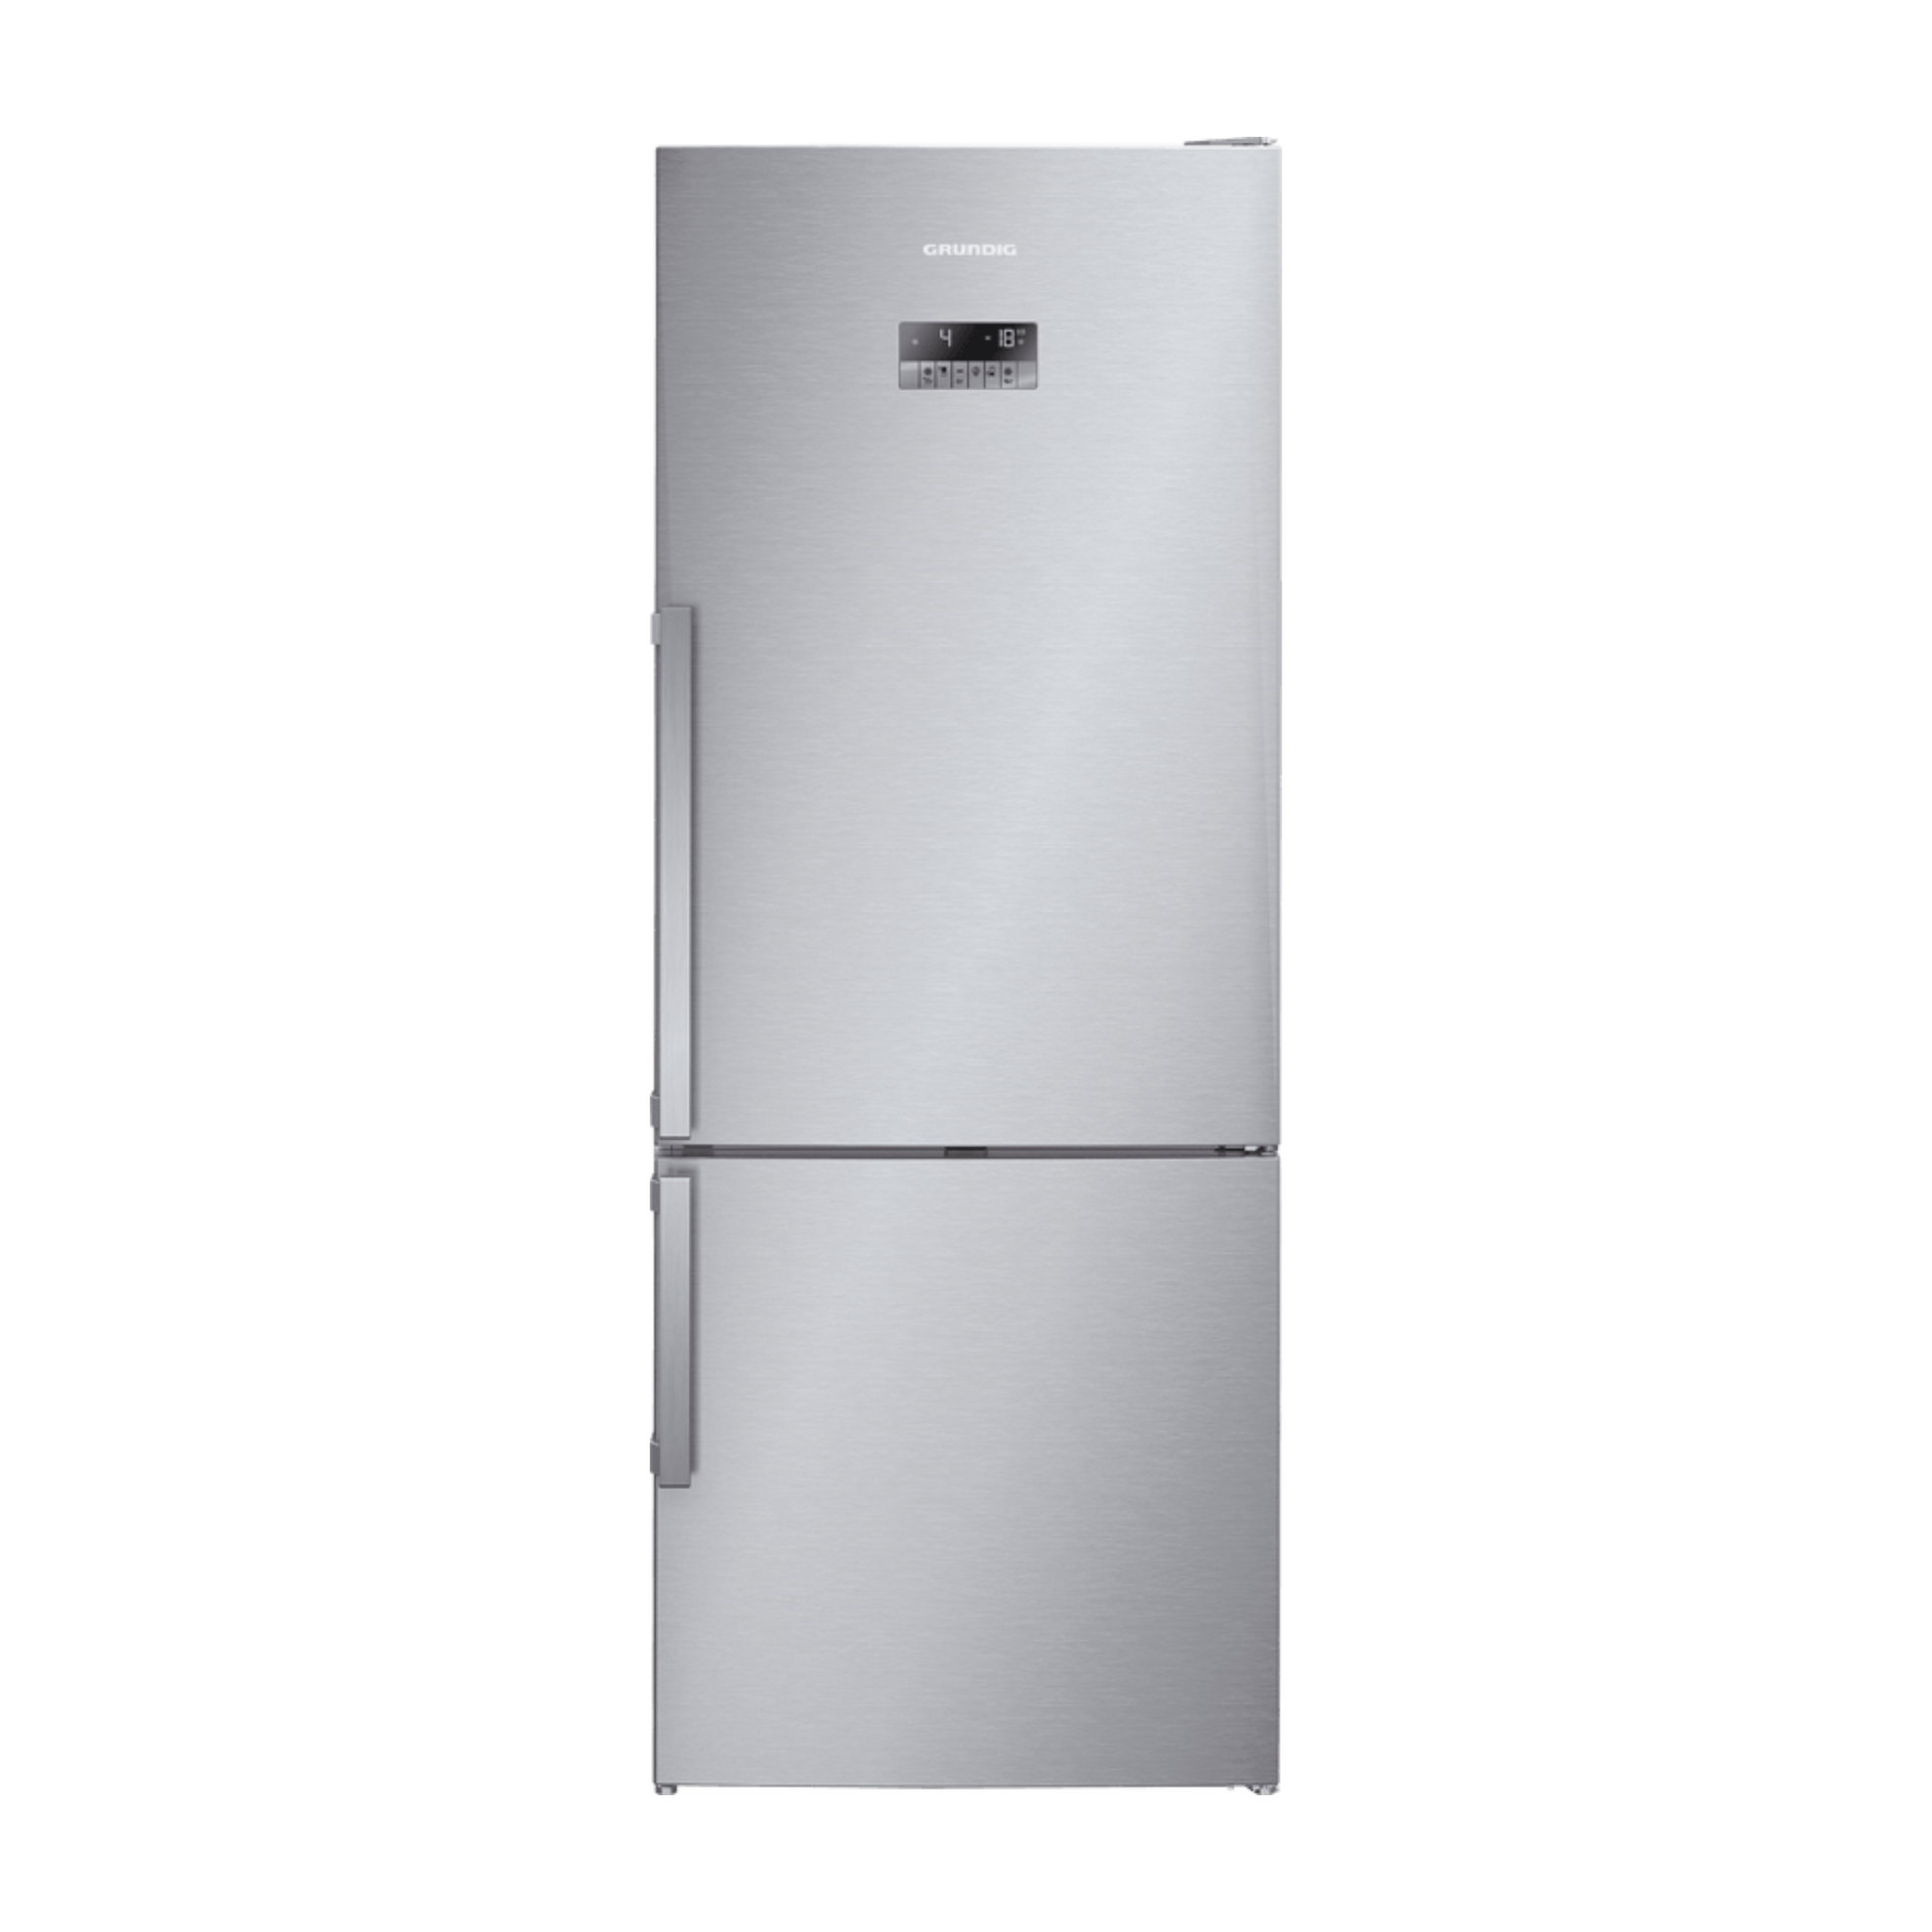 Grundig 520L Refrigerator, GKN17920FX